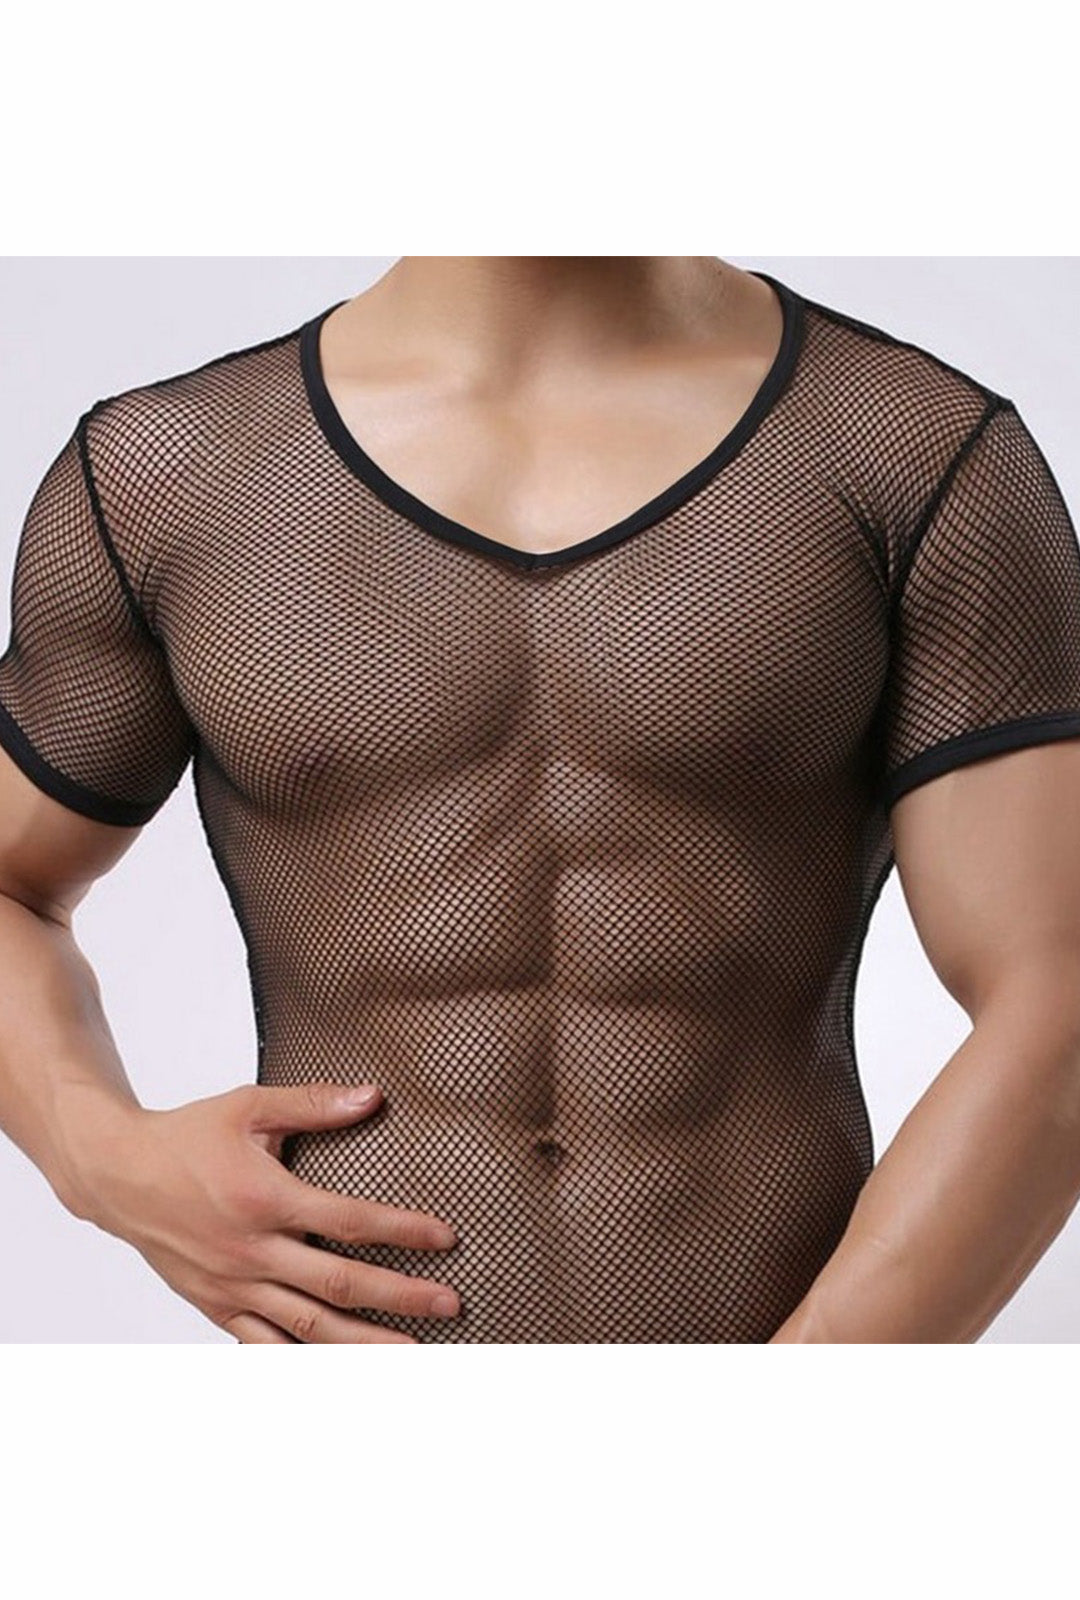 Men's Black Fishnet V-Neck T-Shirt